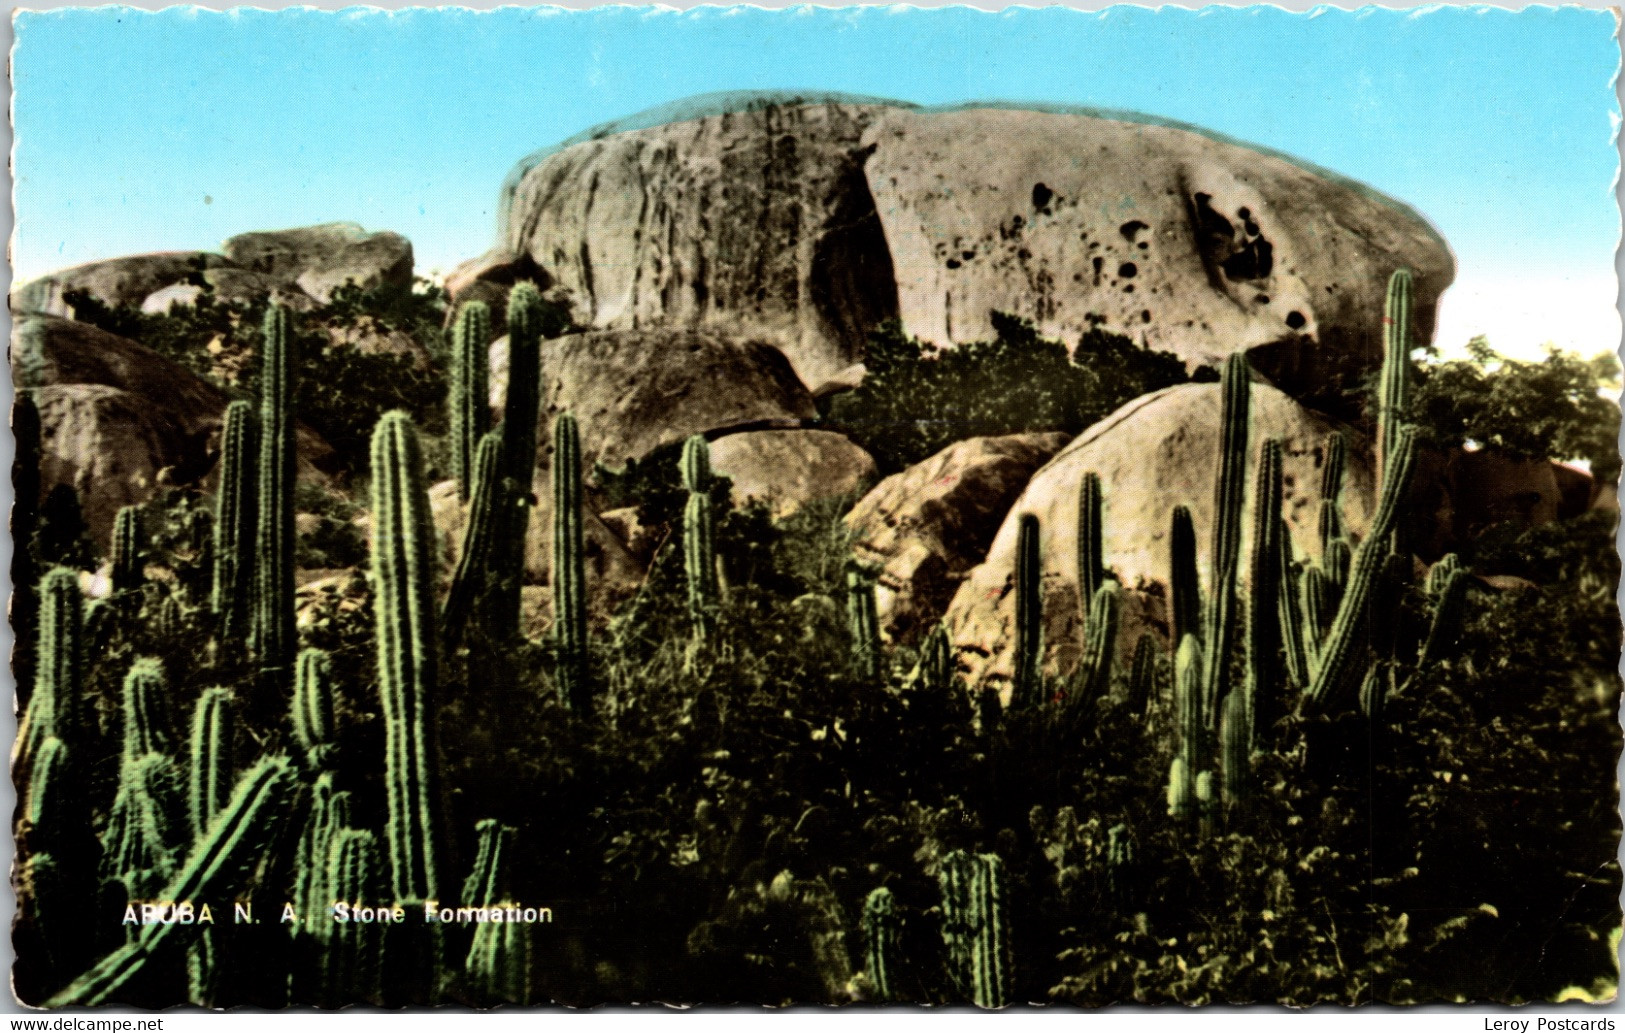 #1960 - Stone Formation, Aruba 1961 - Aruba